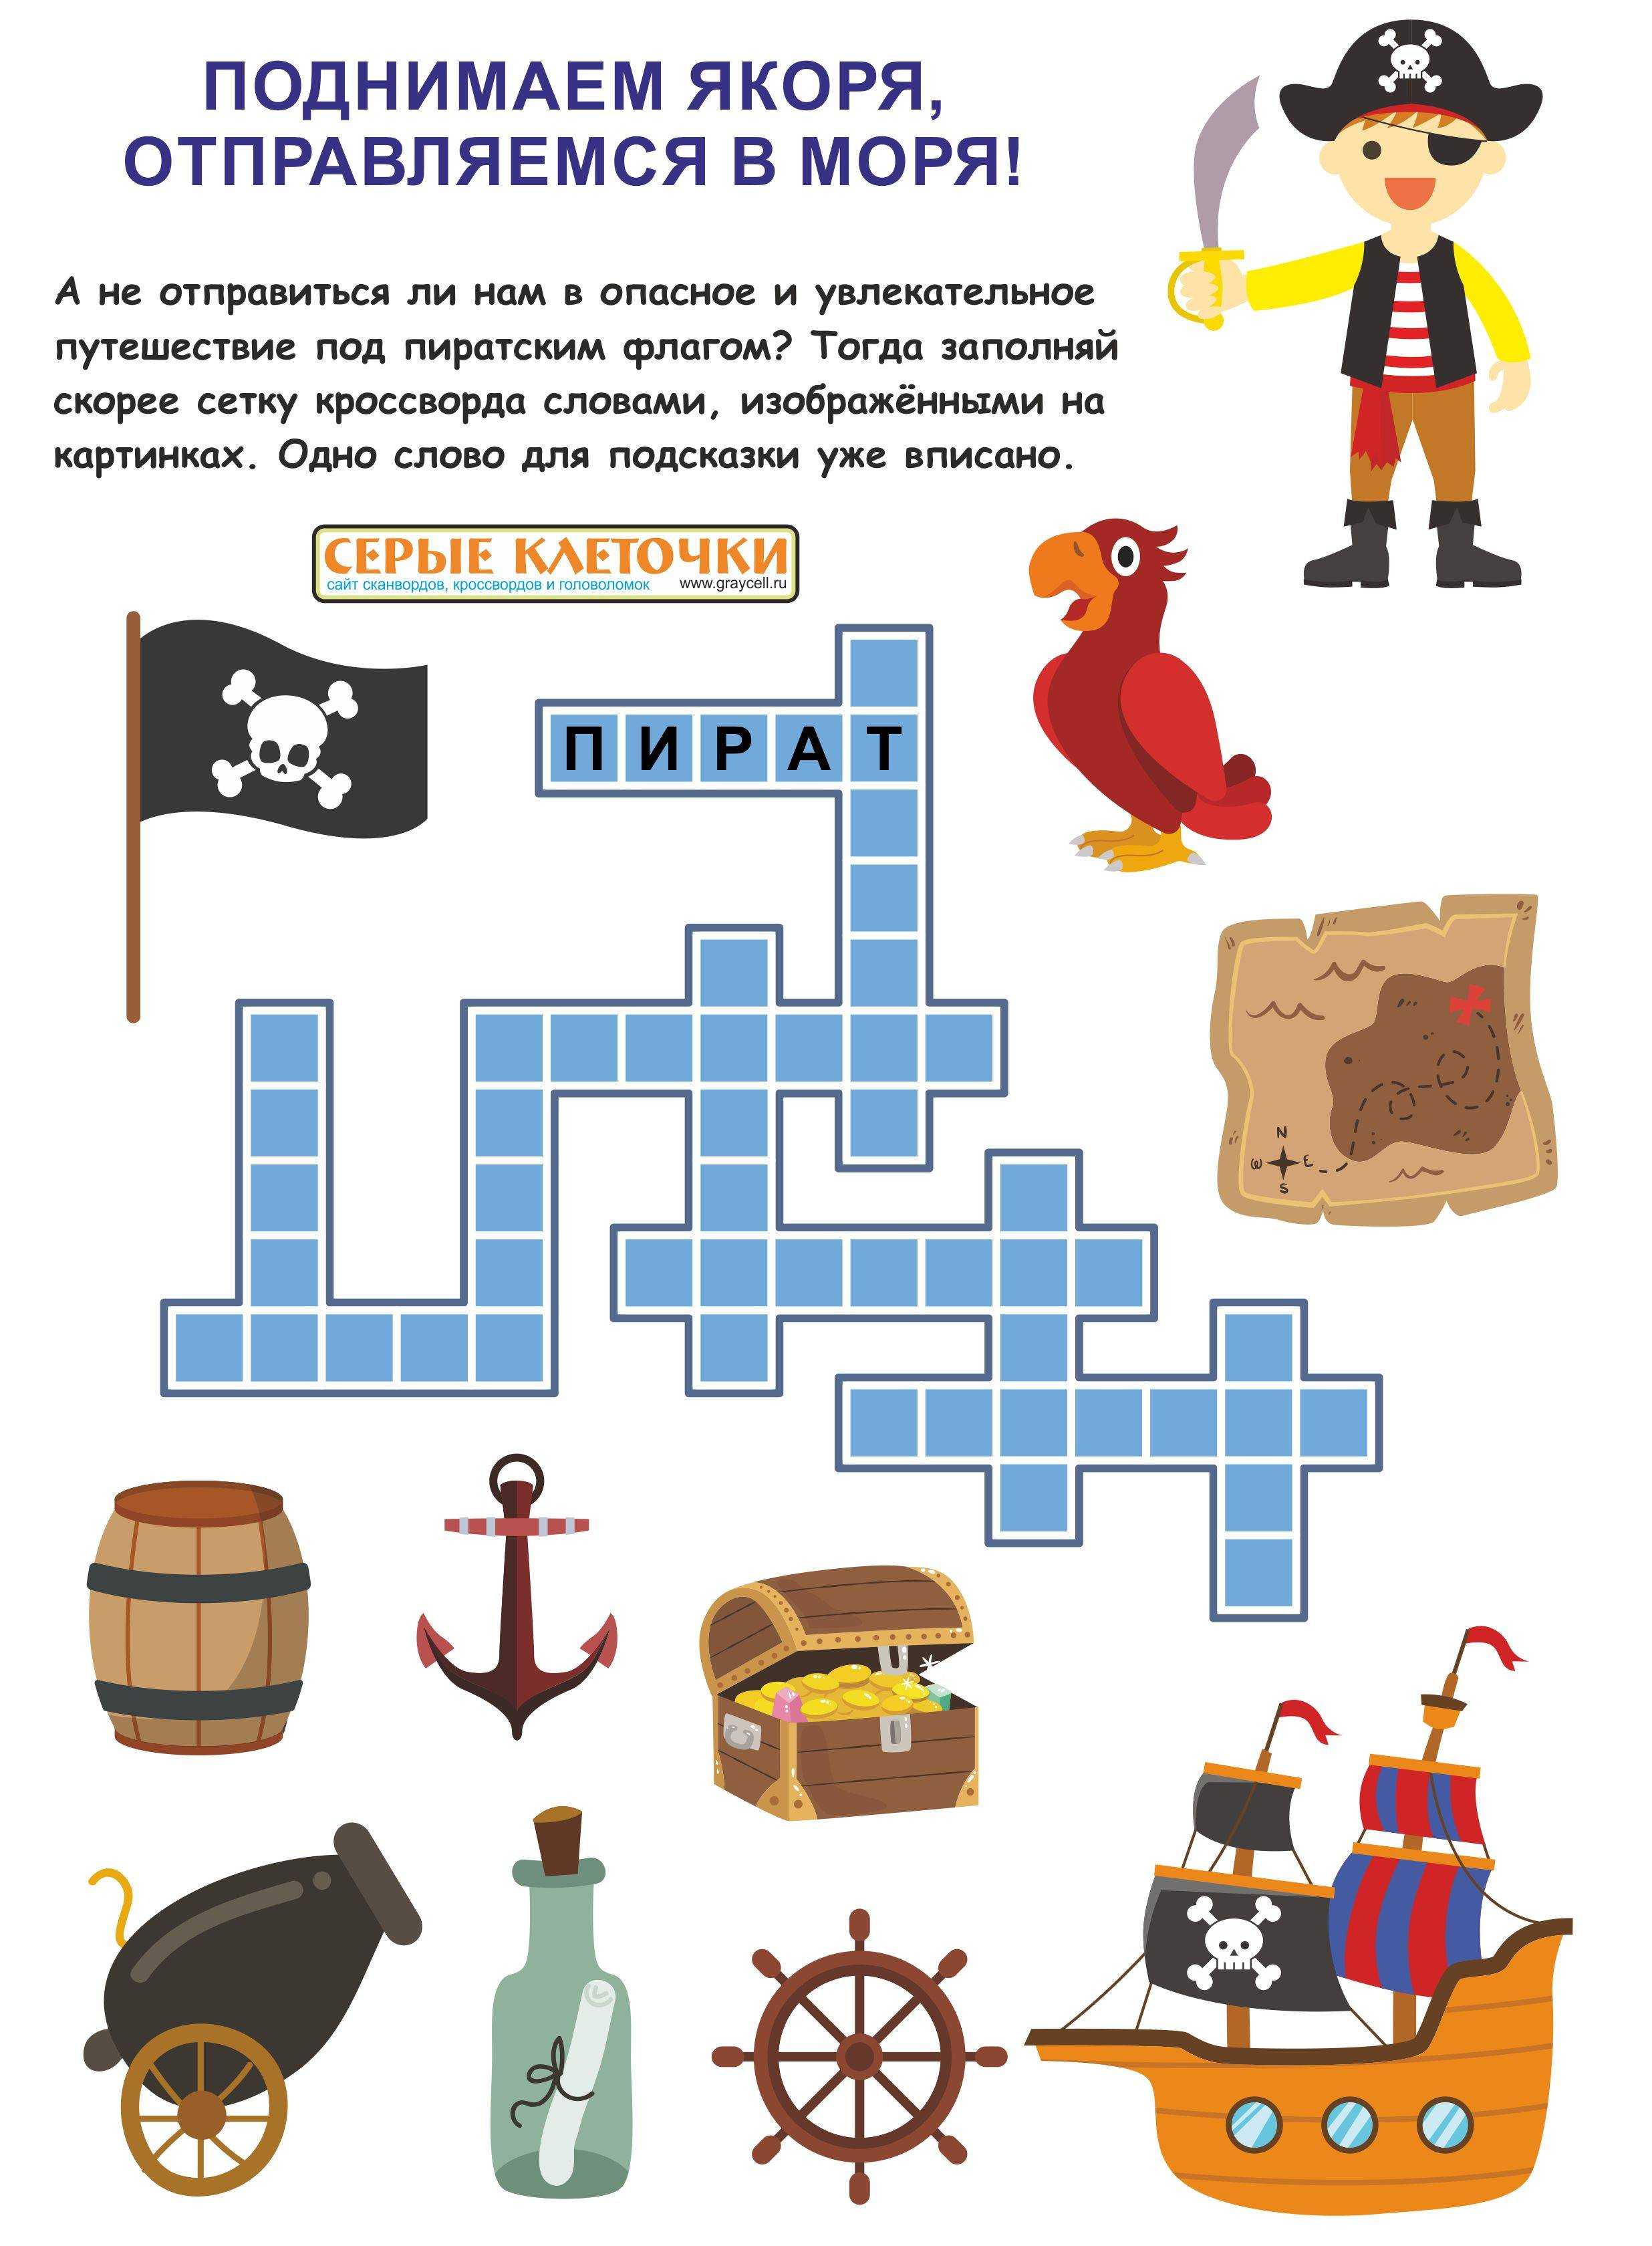 Викторина про пиратов – викторина про пиратов - тест онлайн игра - вопросы с ответами